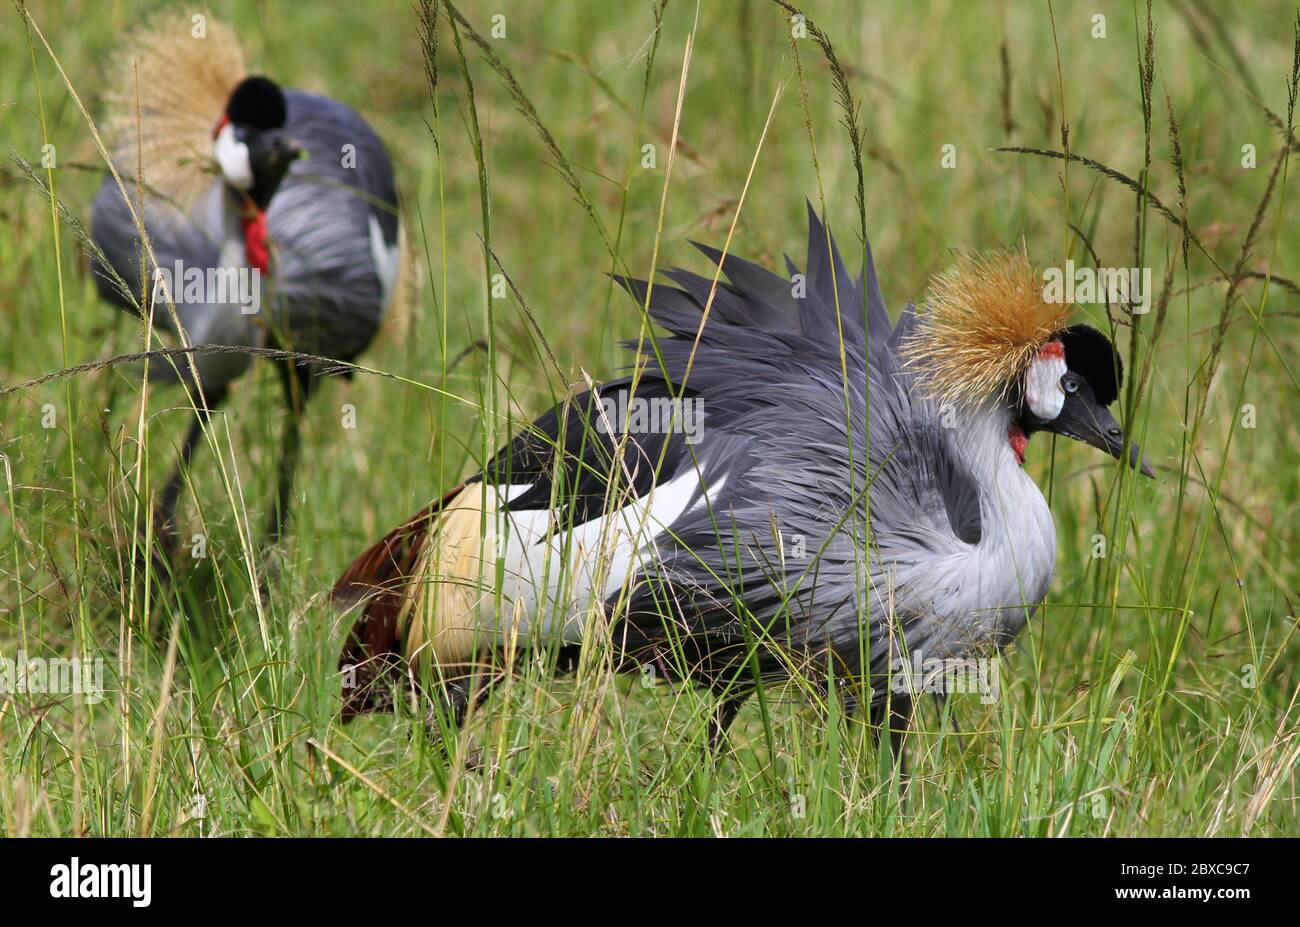 Portrait d'une grue couronnée avec un magnifique plumage dans la grande herbe de la savane kenyane, à la lumière du matin Banque D'Images